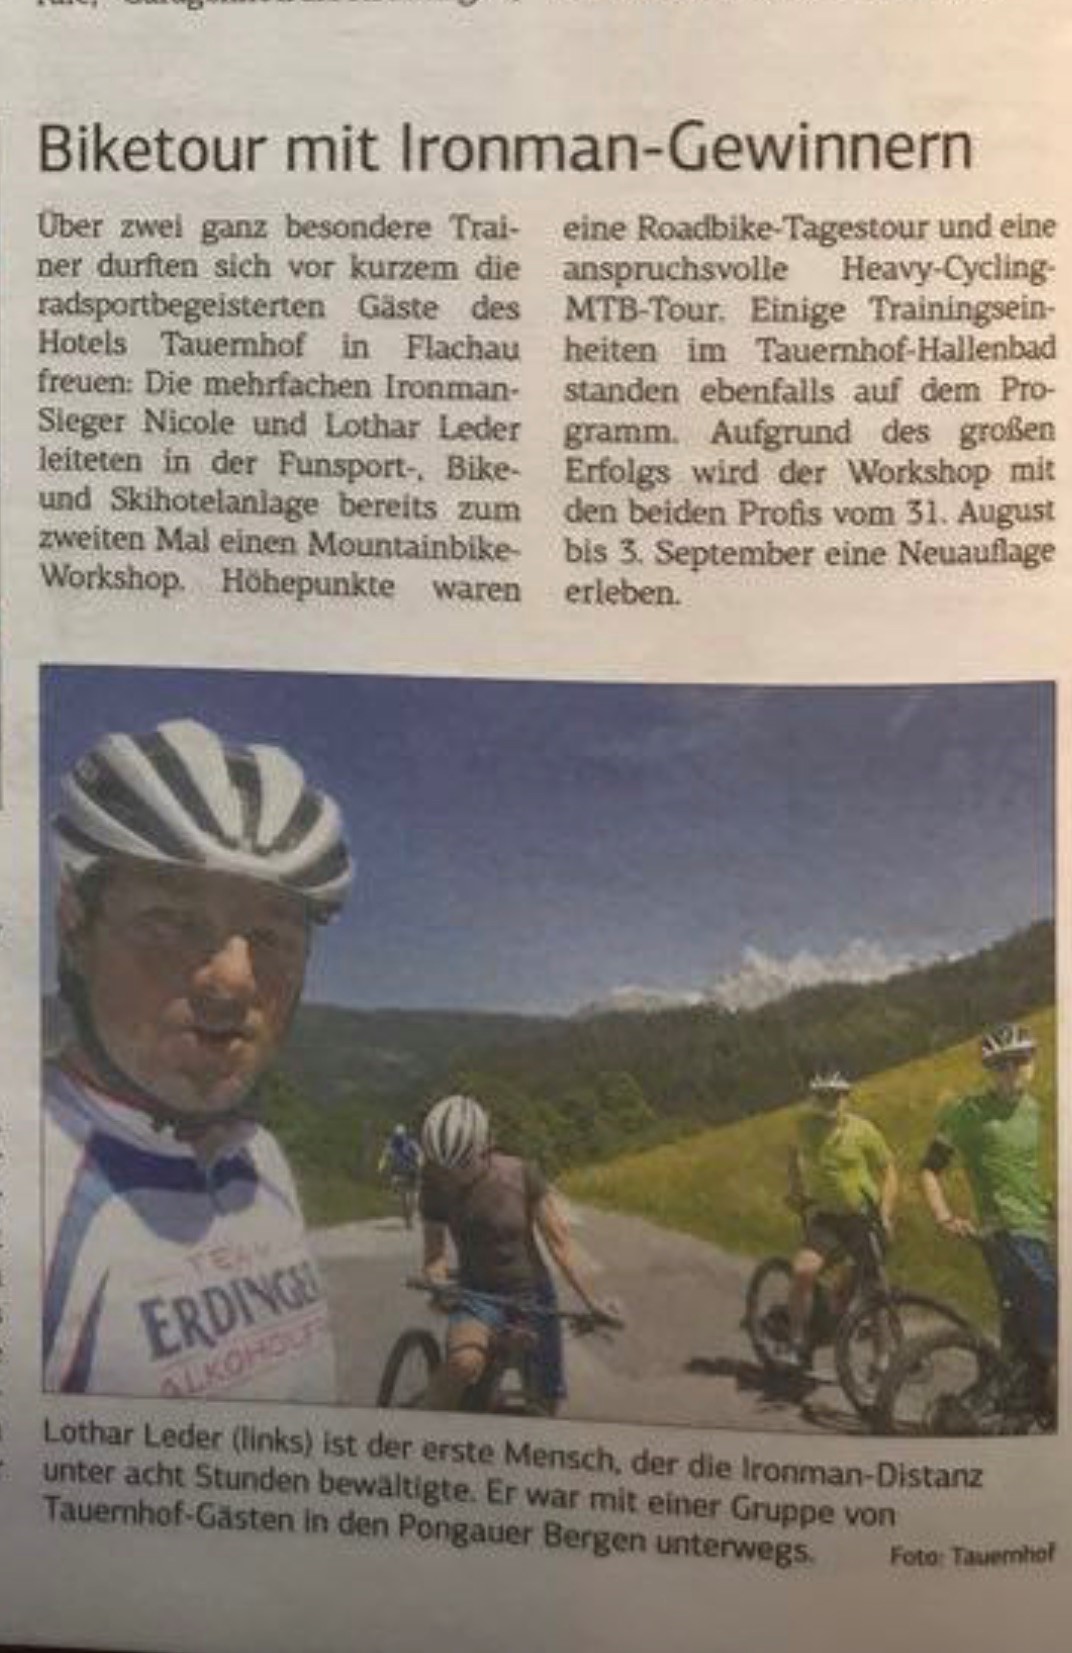 Report bike-tour with Ironman-winner Tauernhof